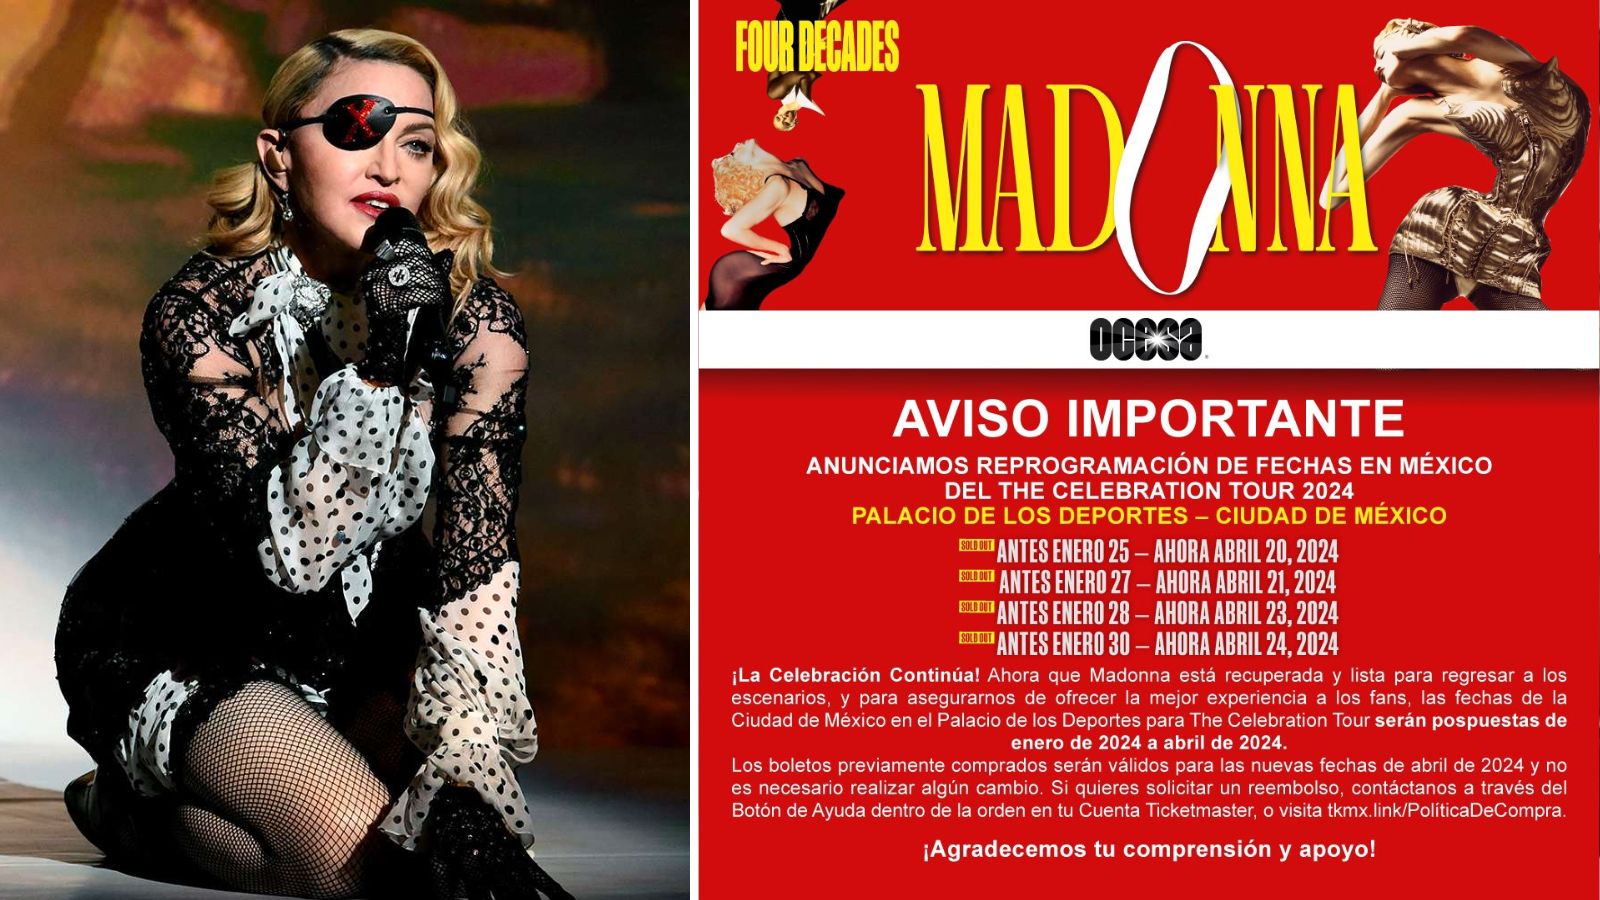 Madonna confirma nuevas fechas para sus conciertos en México